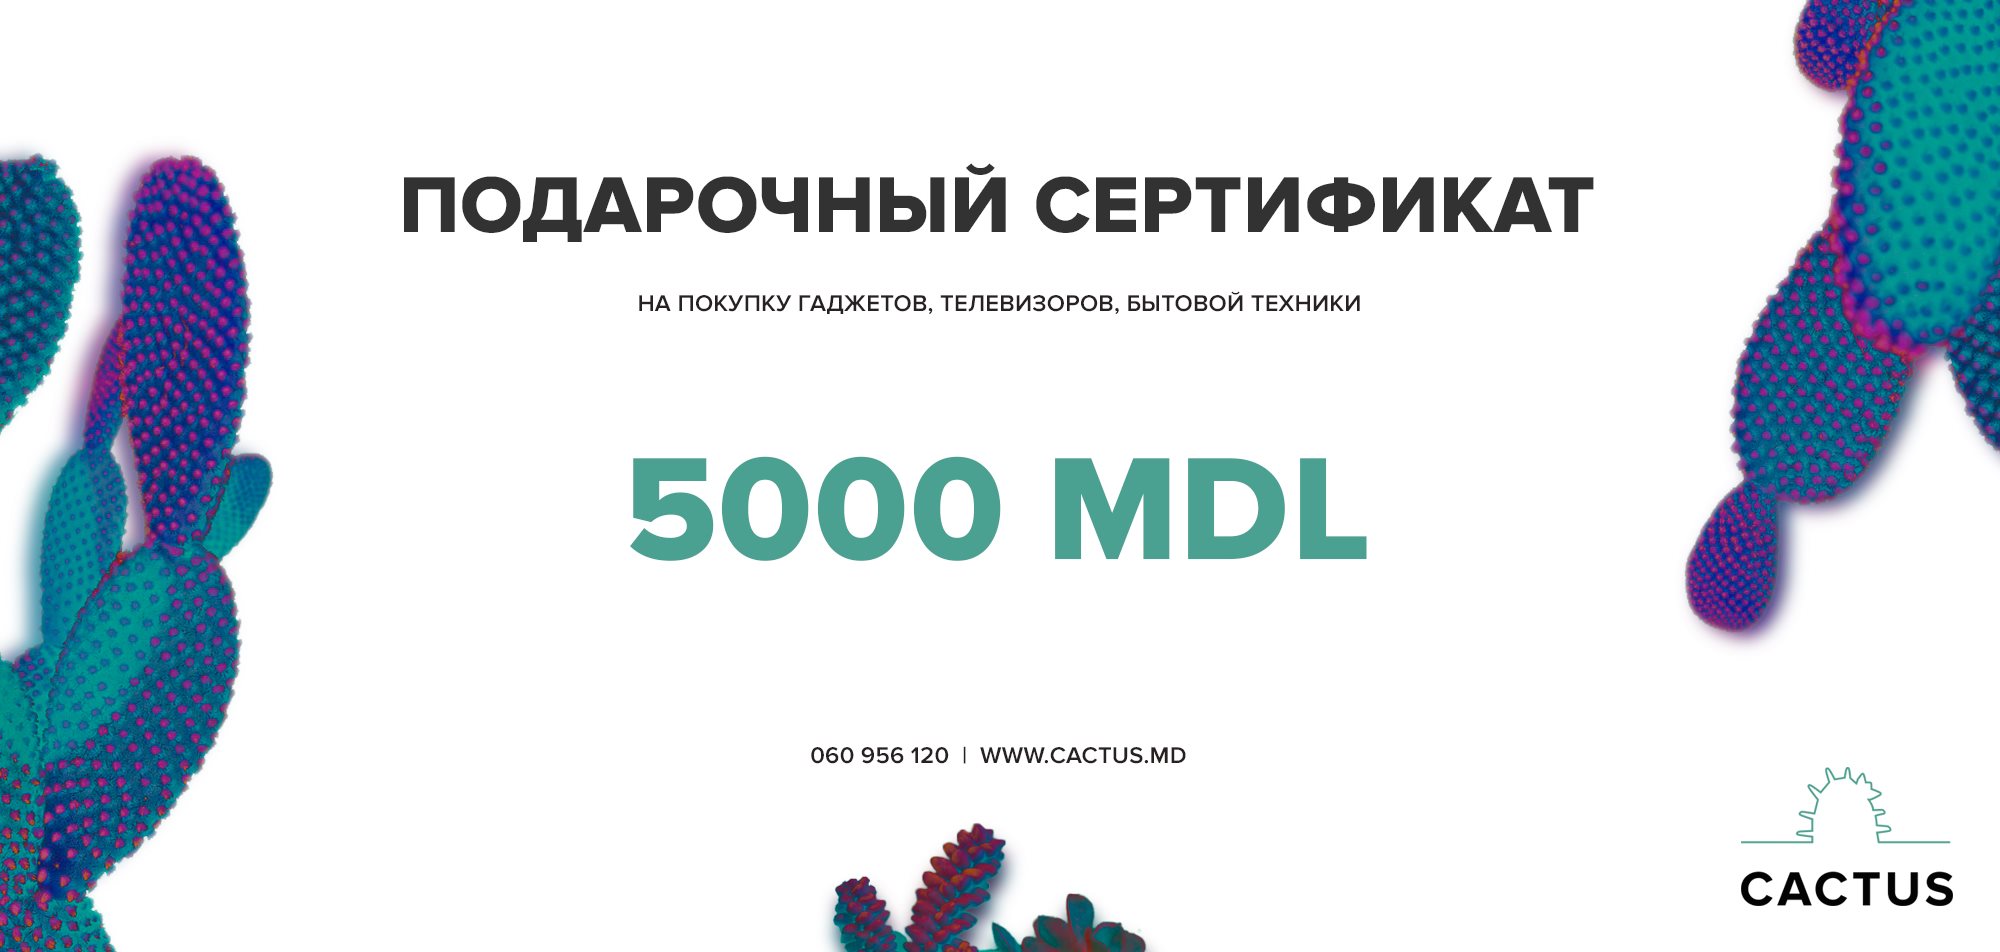 Certificat de cadou - 5000 mdl